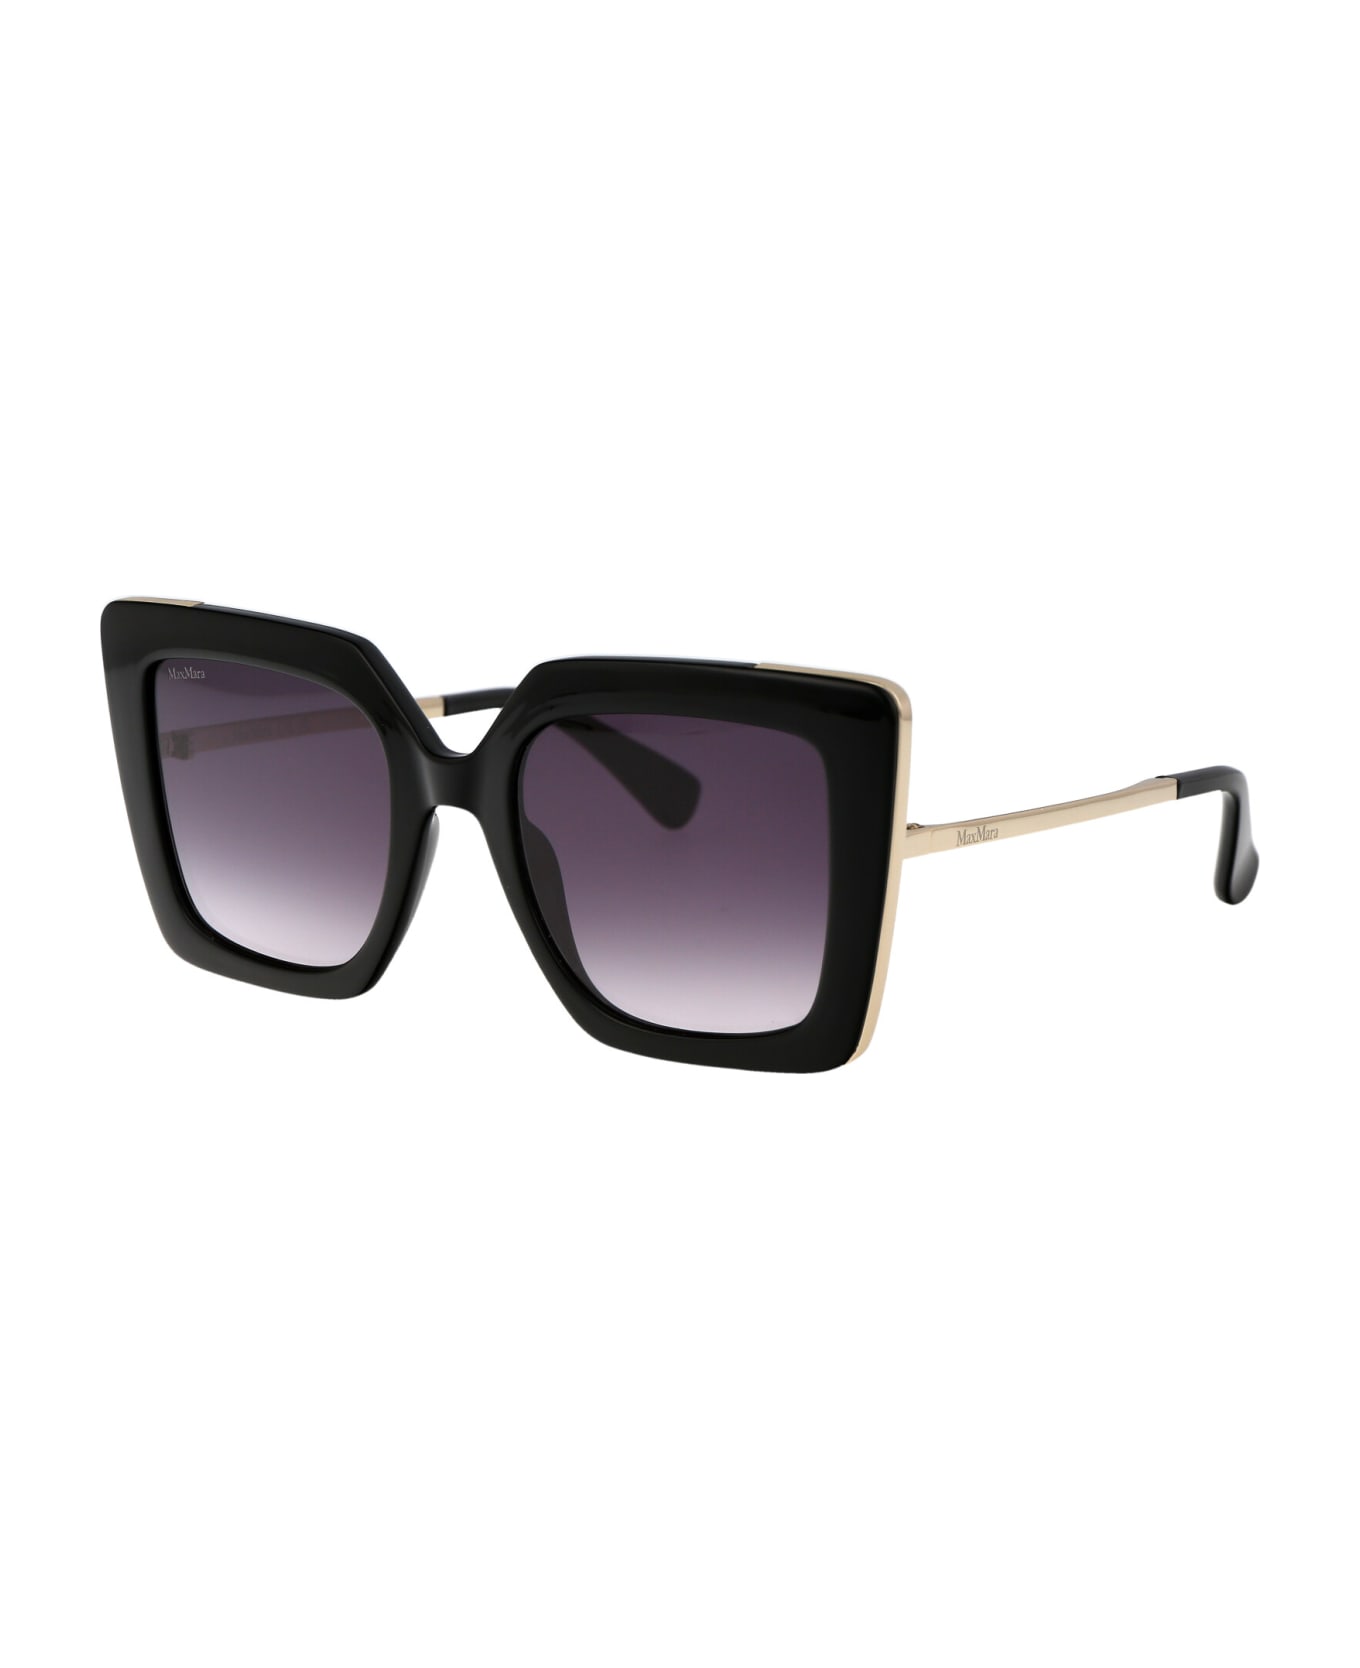 Max Mara Design4 Sunglasses - 01B Nero Lucido/Fumo Grad